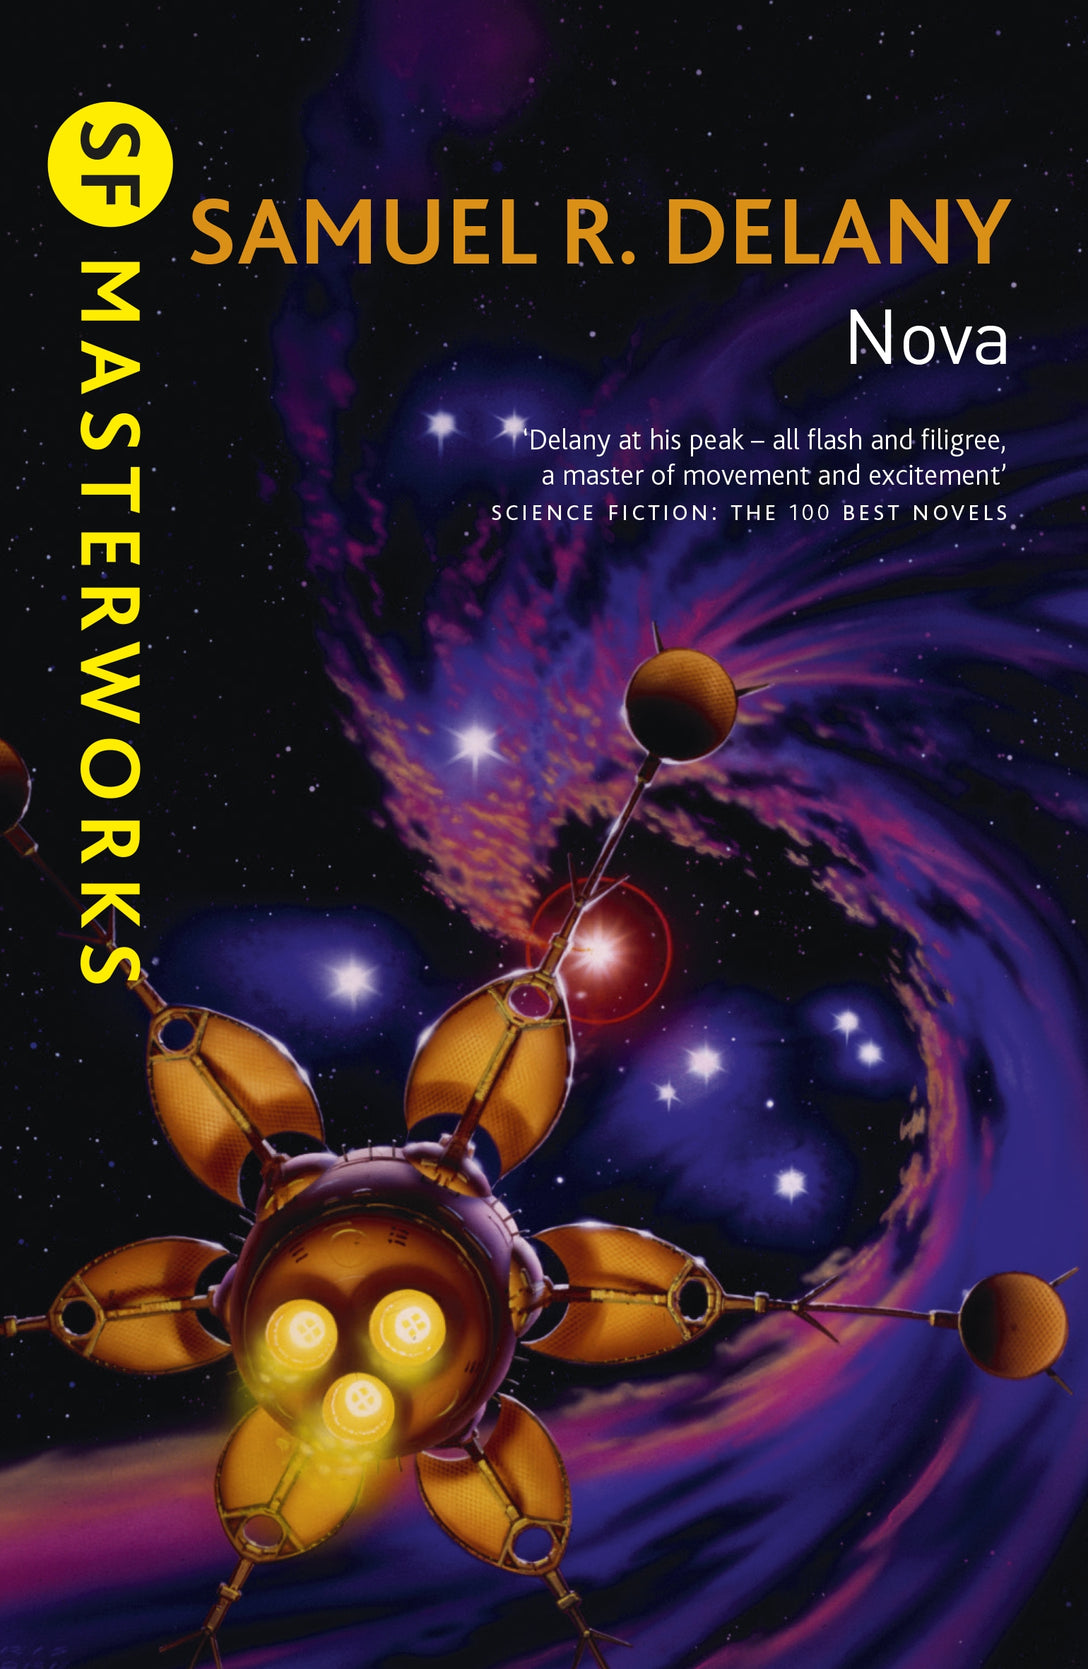 Nova by Samuel R. Delany